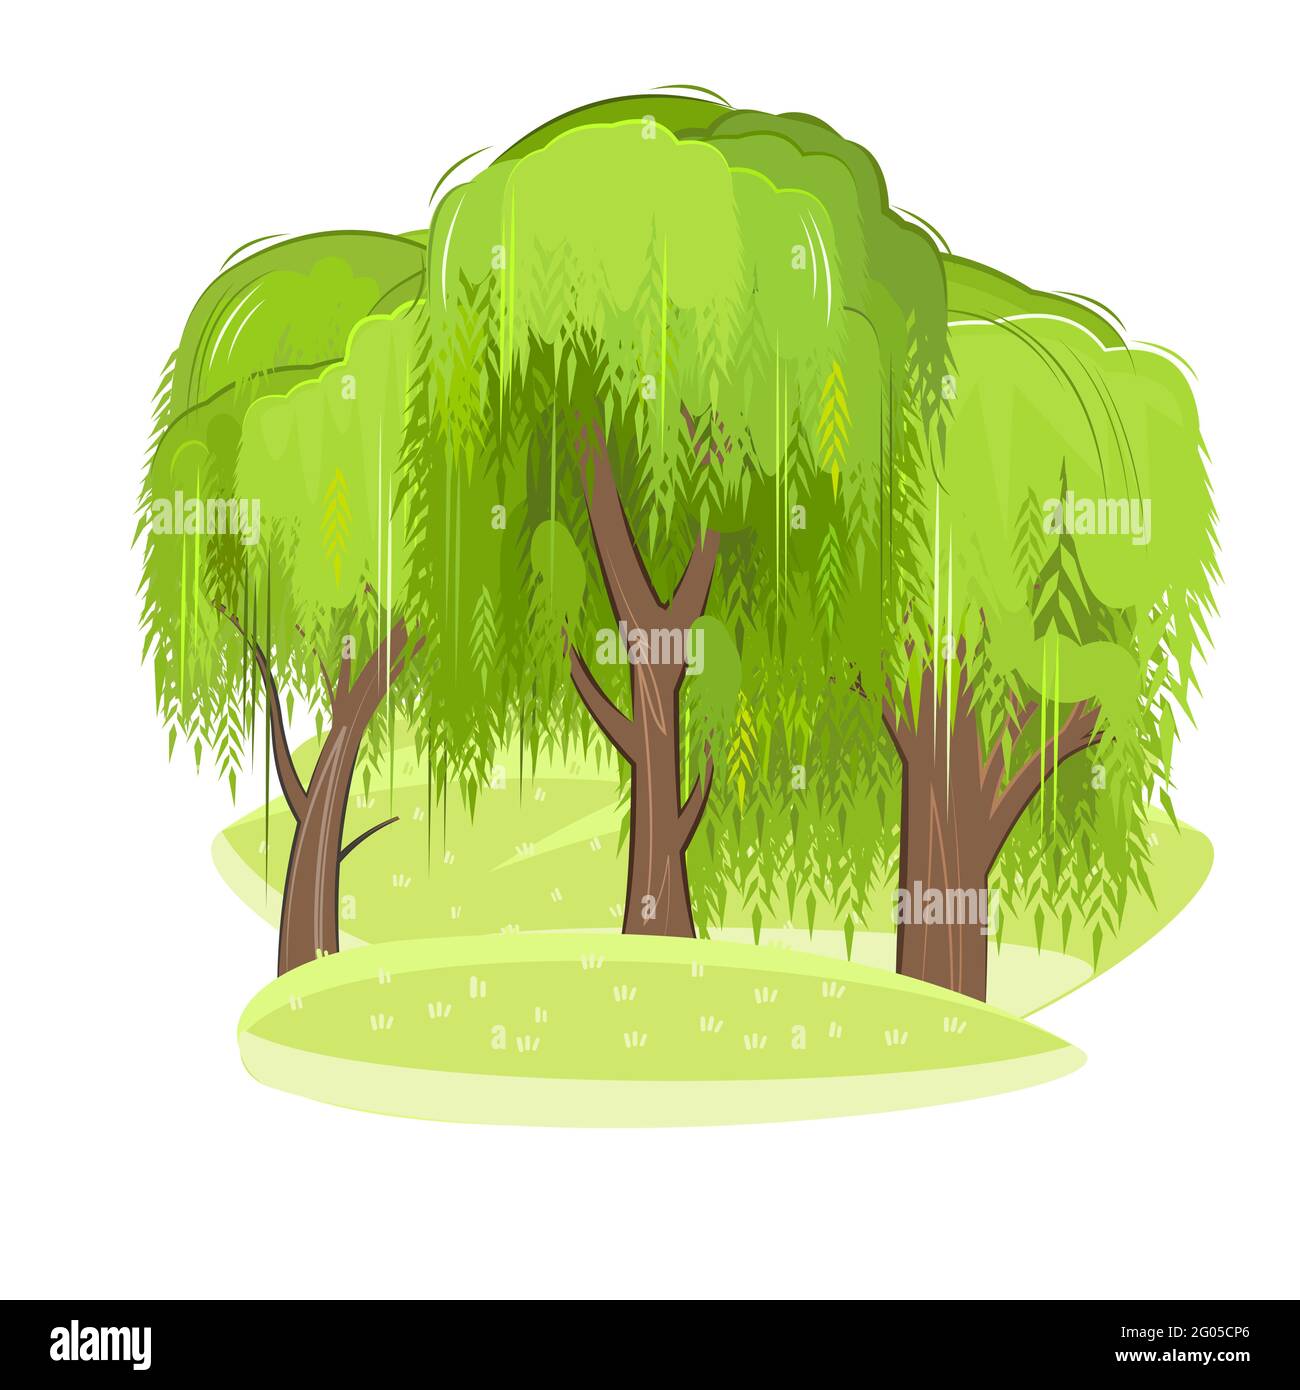 Paysage rural vert avec arbres. Prés et collines. Style dessin animé plat. L'illustration est isolée sur un fond blanc. Vecteur Illustration de Vecteur